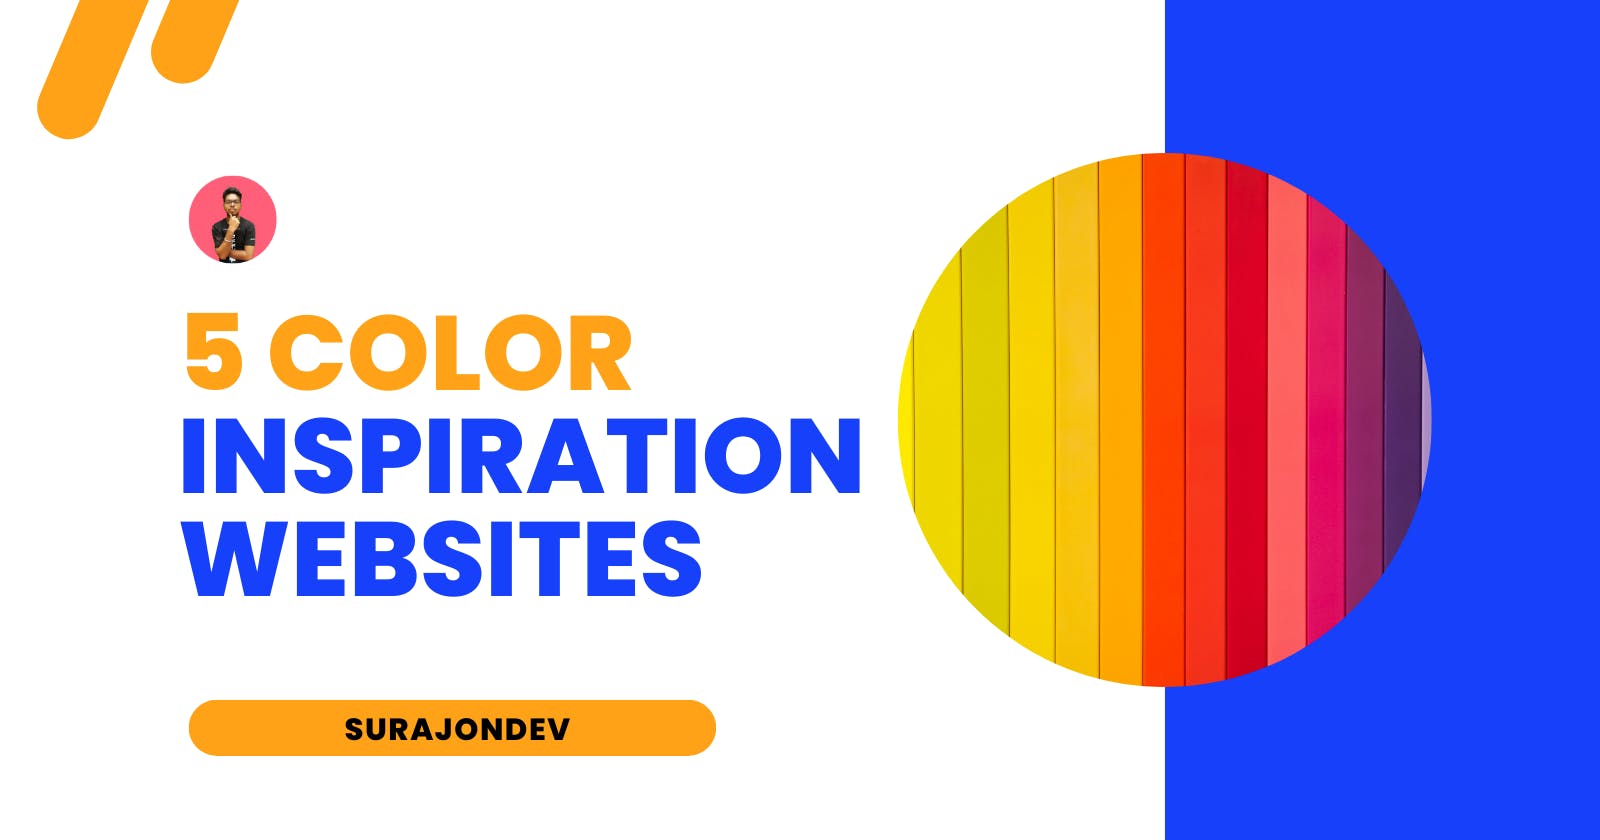 5 Color Inspiration Website You Should Bookmark